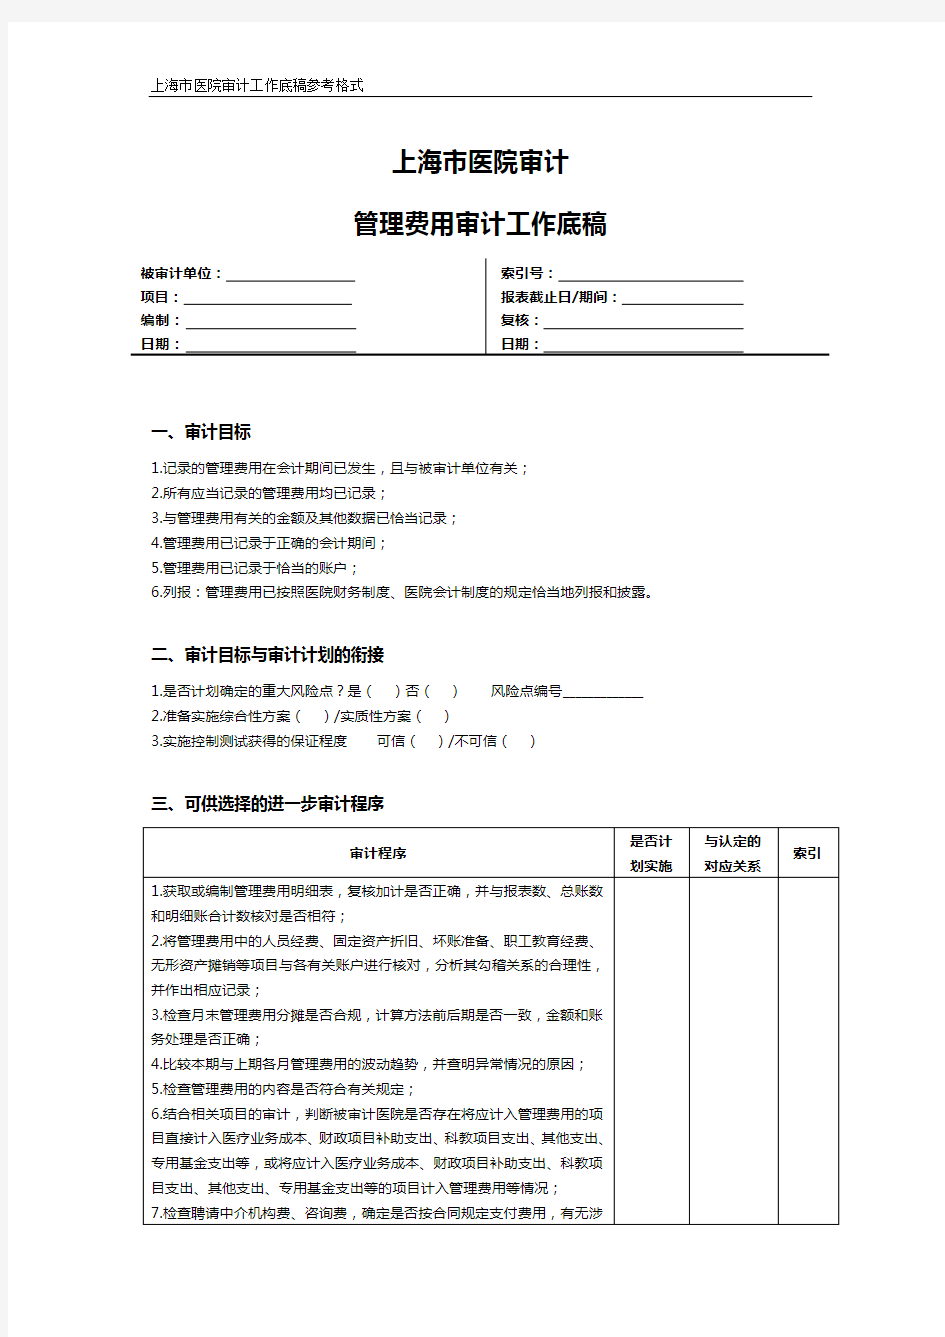 上海市医院审计管理费用审计工作底稿